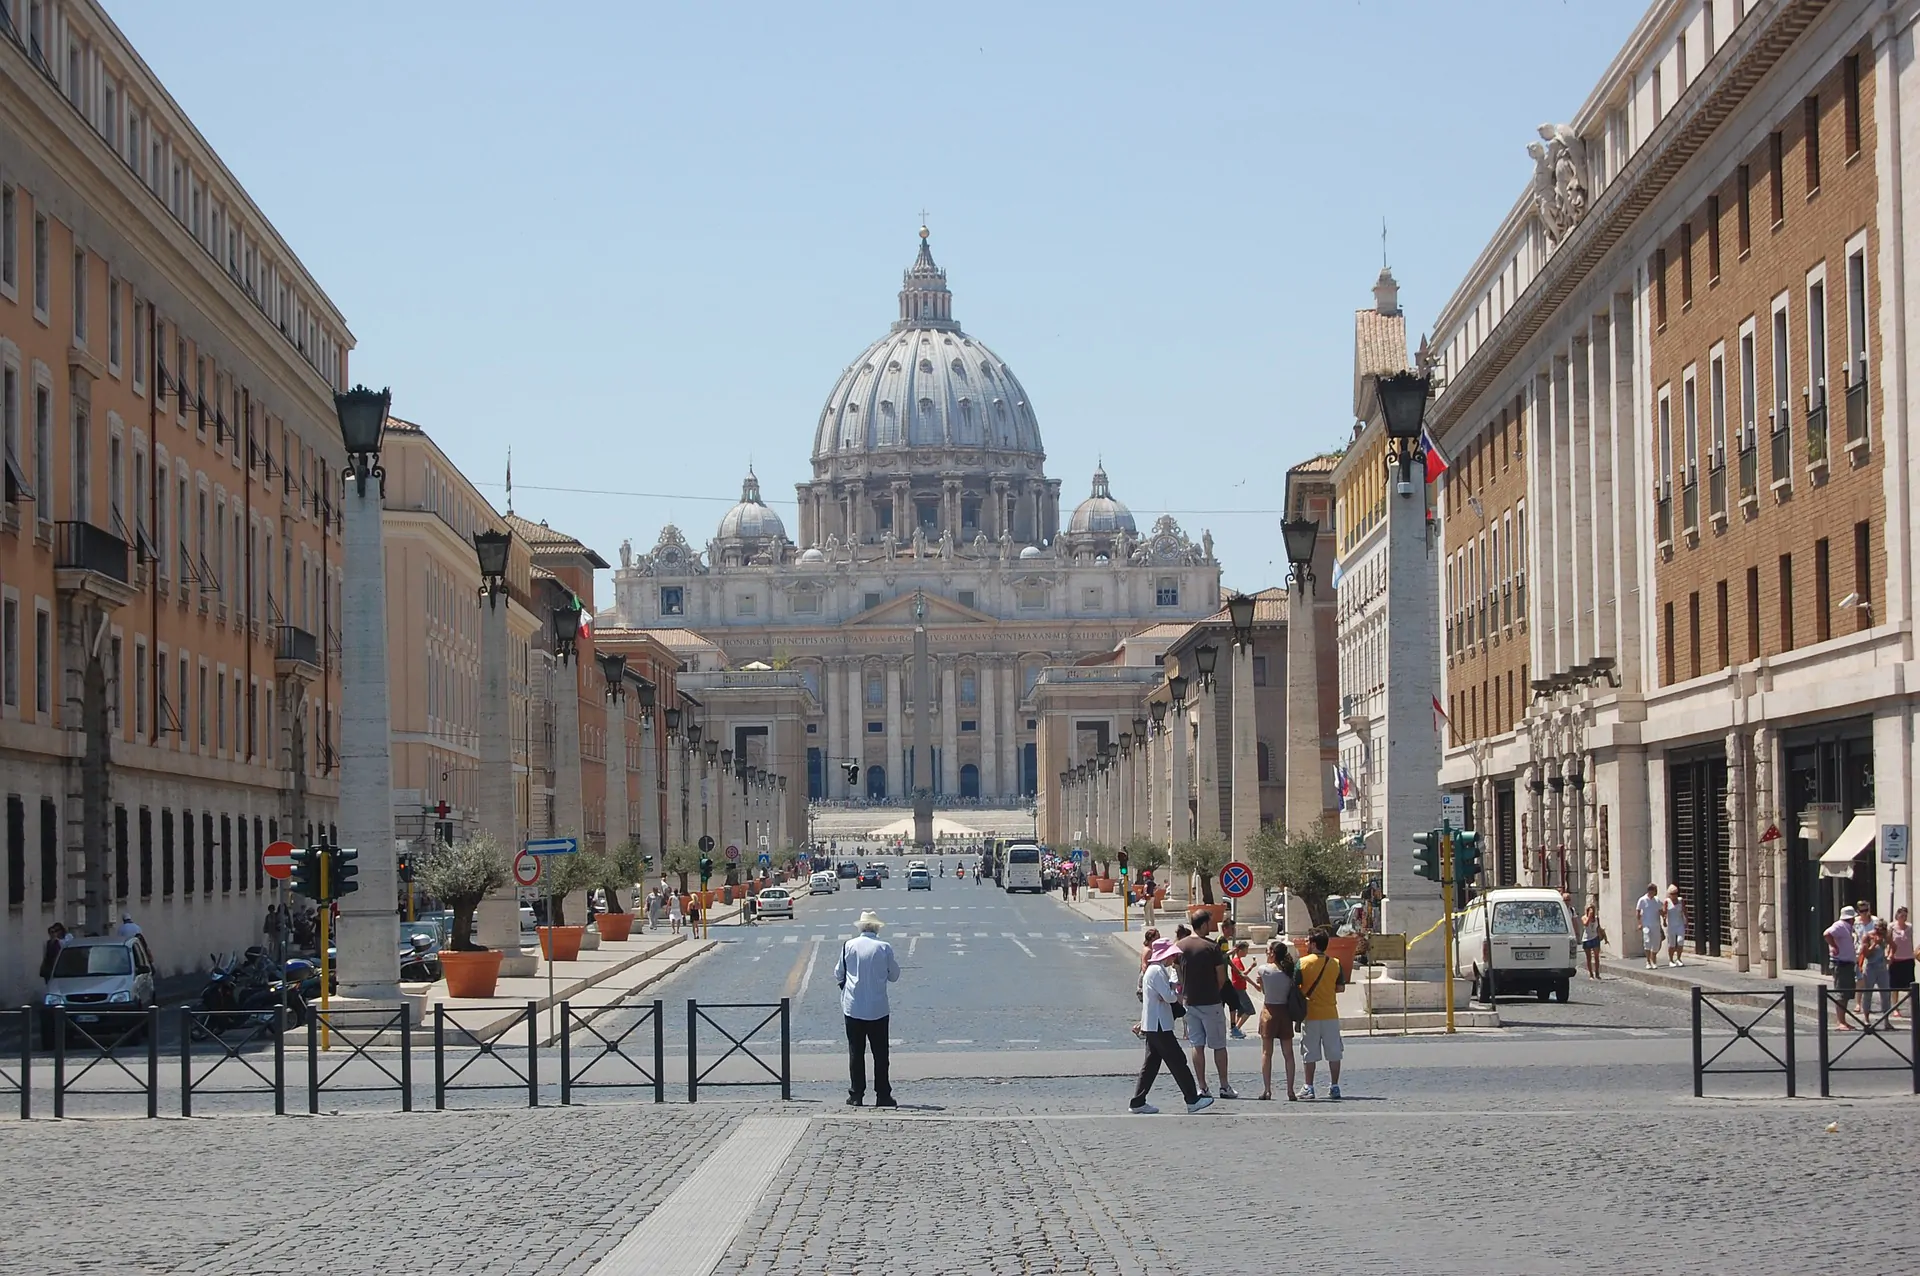 Allarme bomba in Vaticano